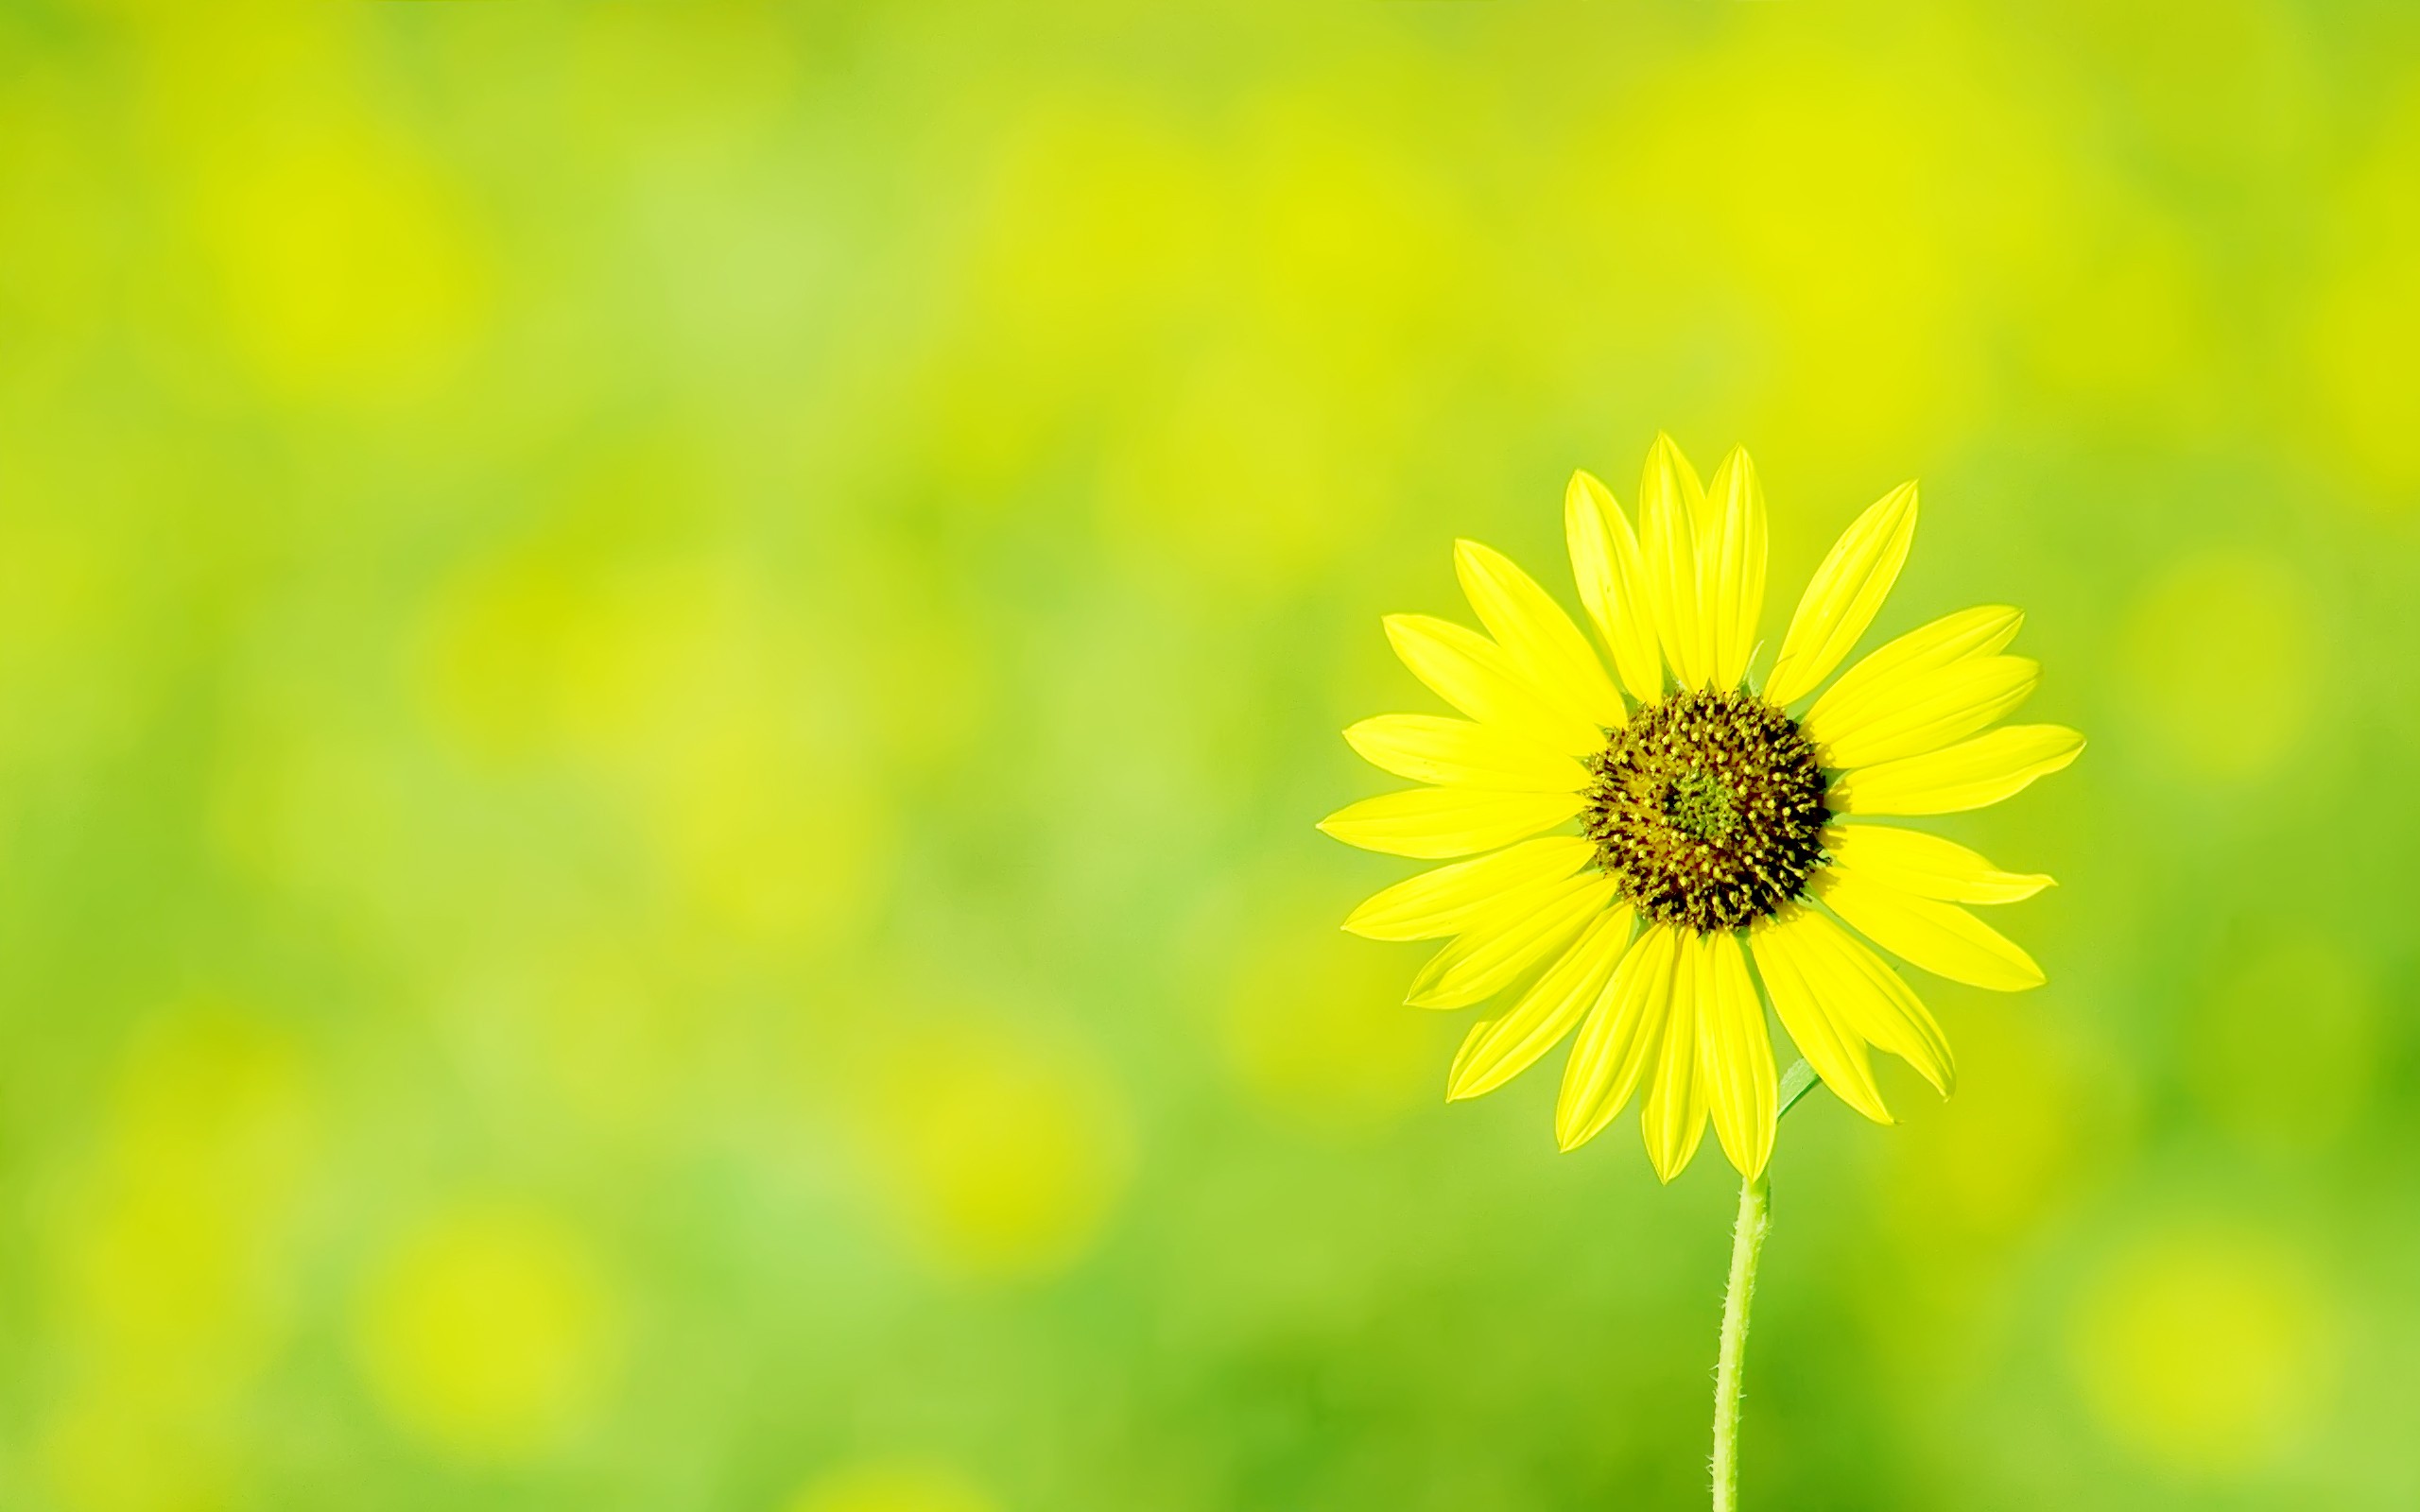 Daisy Vang - hoa cúc vàng - từ lâu đã trở thành một biểu tượng của tình bạn và sự chung thủy. Nếu bạn đang tìm kiếm những bức ảnh đầy ý nghĩa về loài hoa này, thì hãy đến với chúng tôi và trải nghiệm ngay thôi nào!